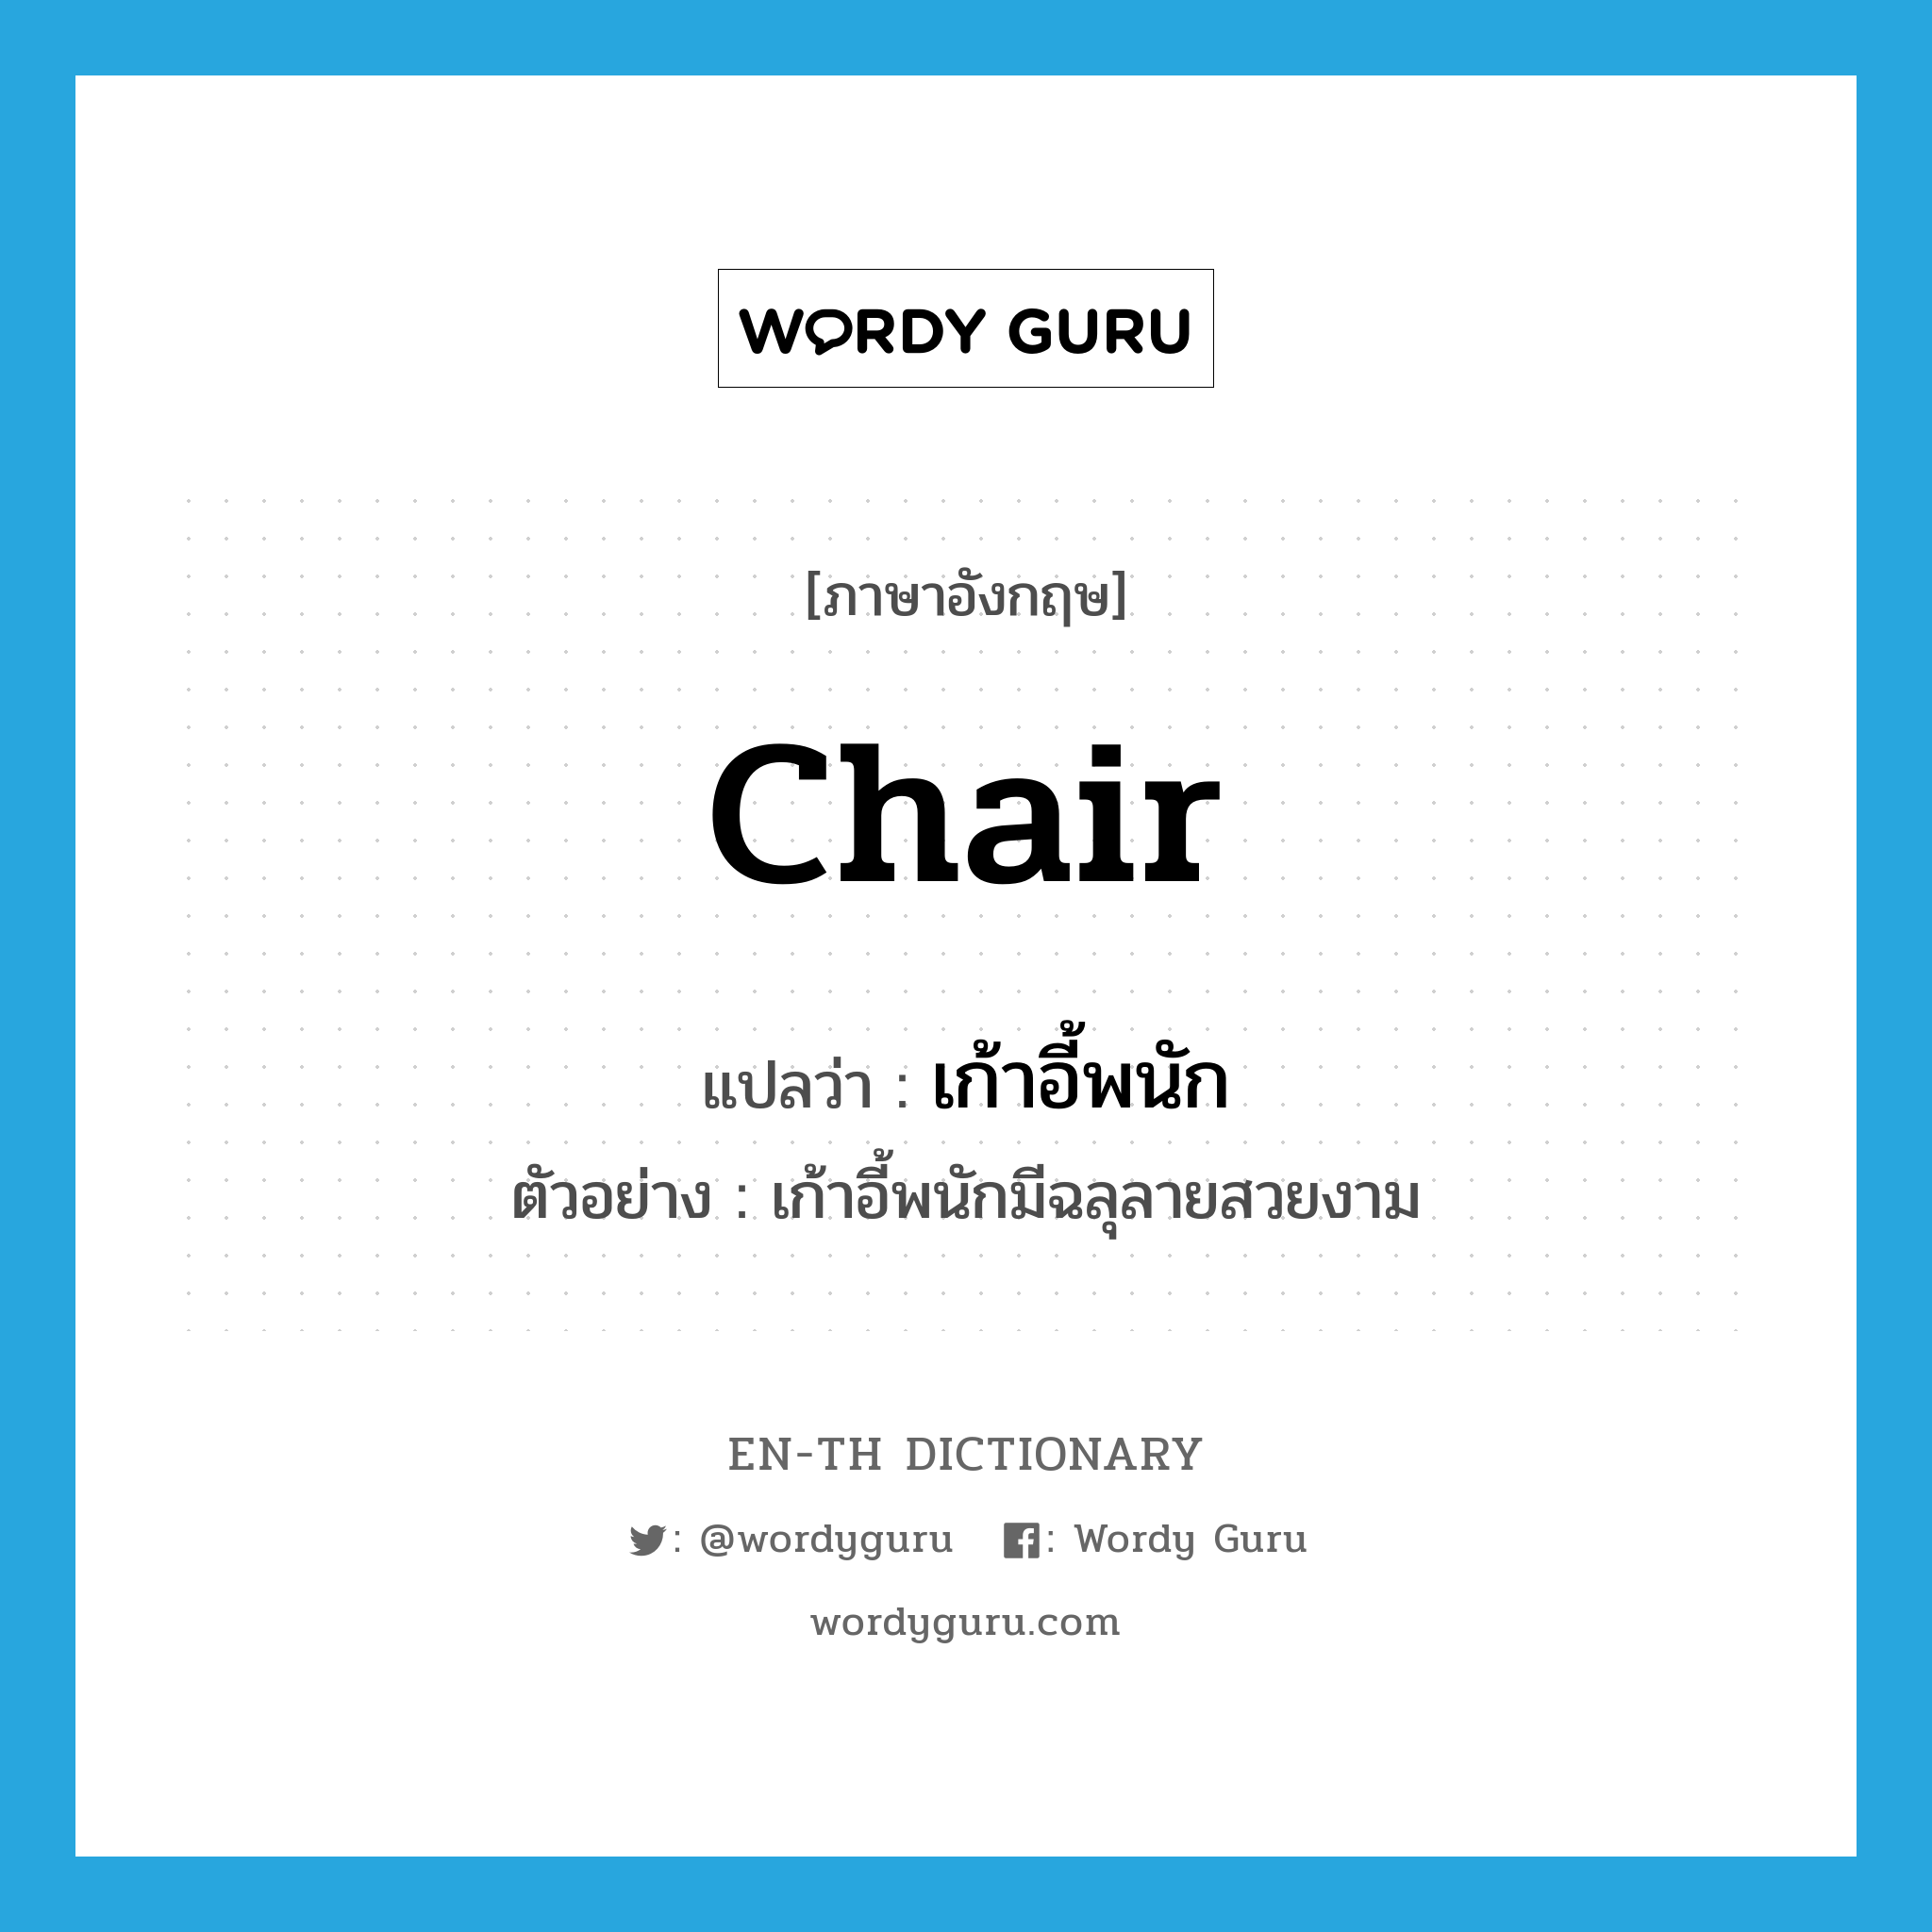 เก้าอี้พนัก ภาษาอังกฤษ?, คำศัพท์ภาษาอังกฤษ เก้าอี้พนัก แปลว่า chair ประเภท N ตัวอย่าง เก้าอี้พนักมีฉลุลายสวยงาม หมวด N